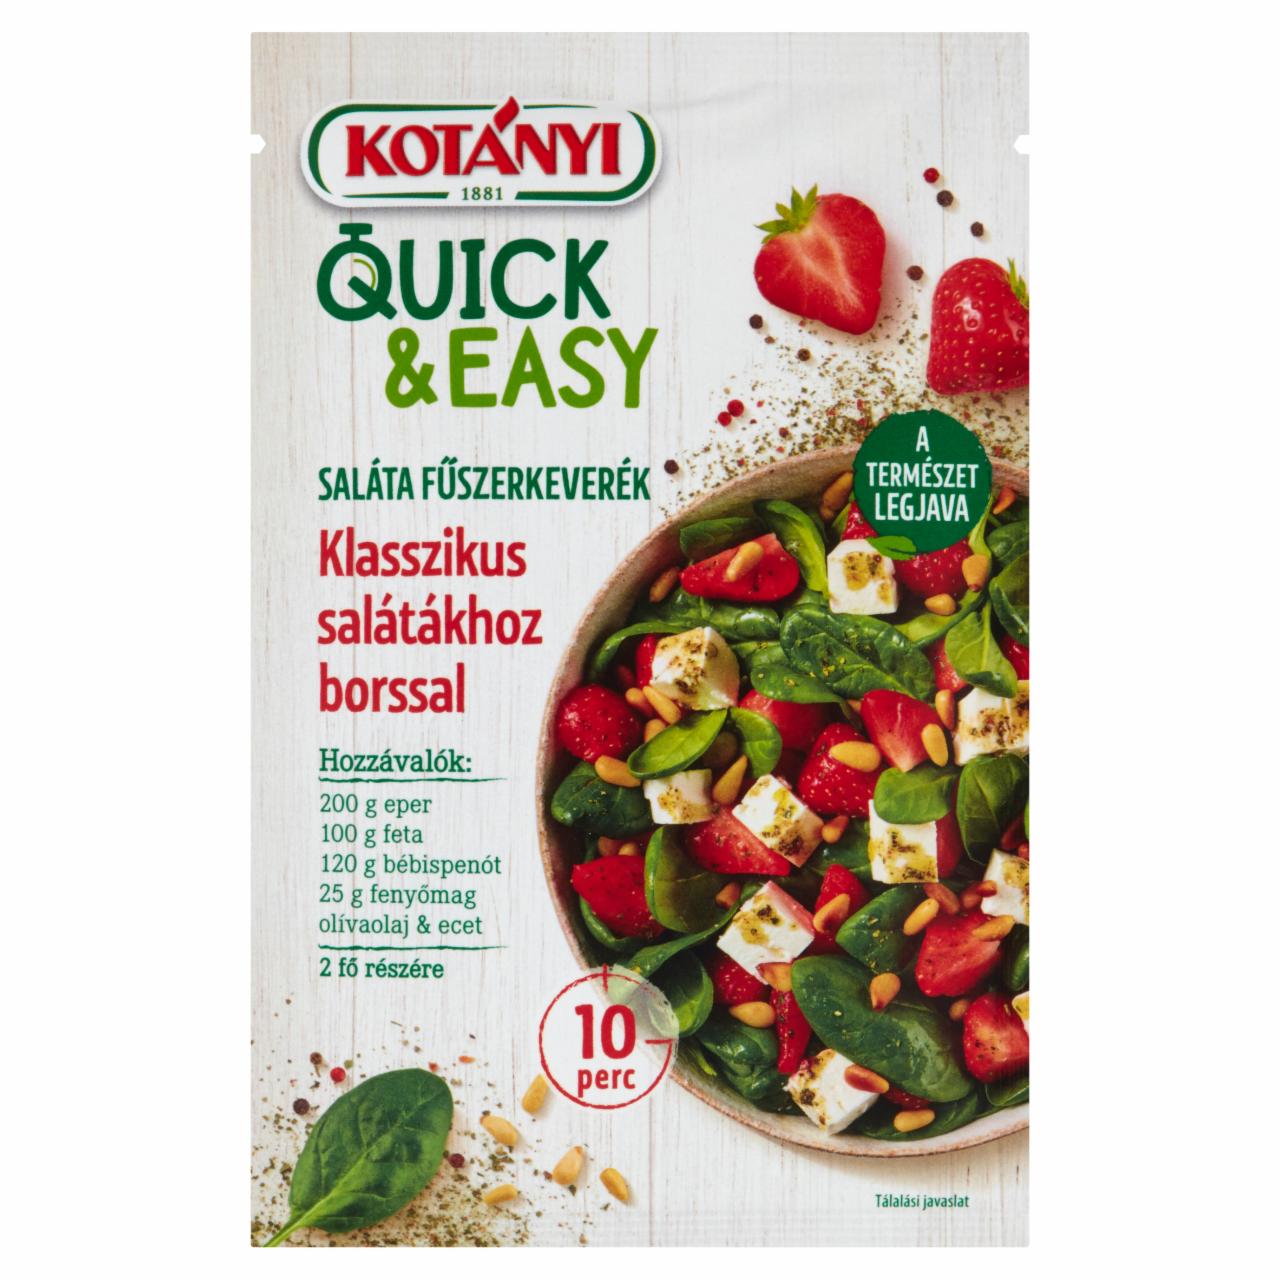 Képek - Kotányi Quick & Easy saláta fűszerkeverék klasszikus salátákhoz borssal 20 g